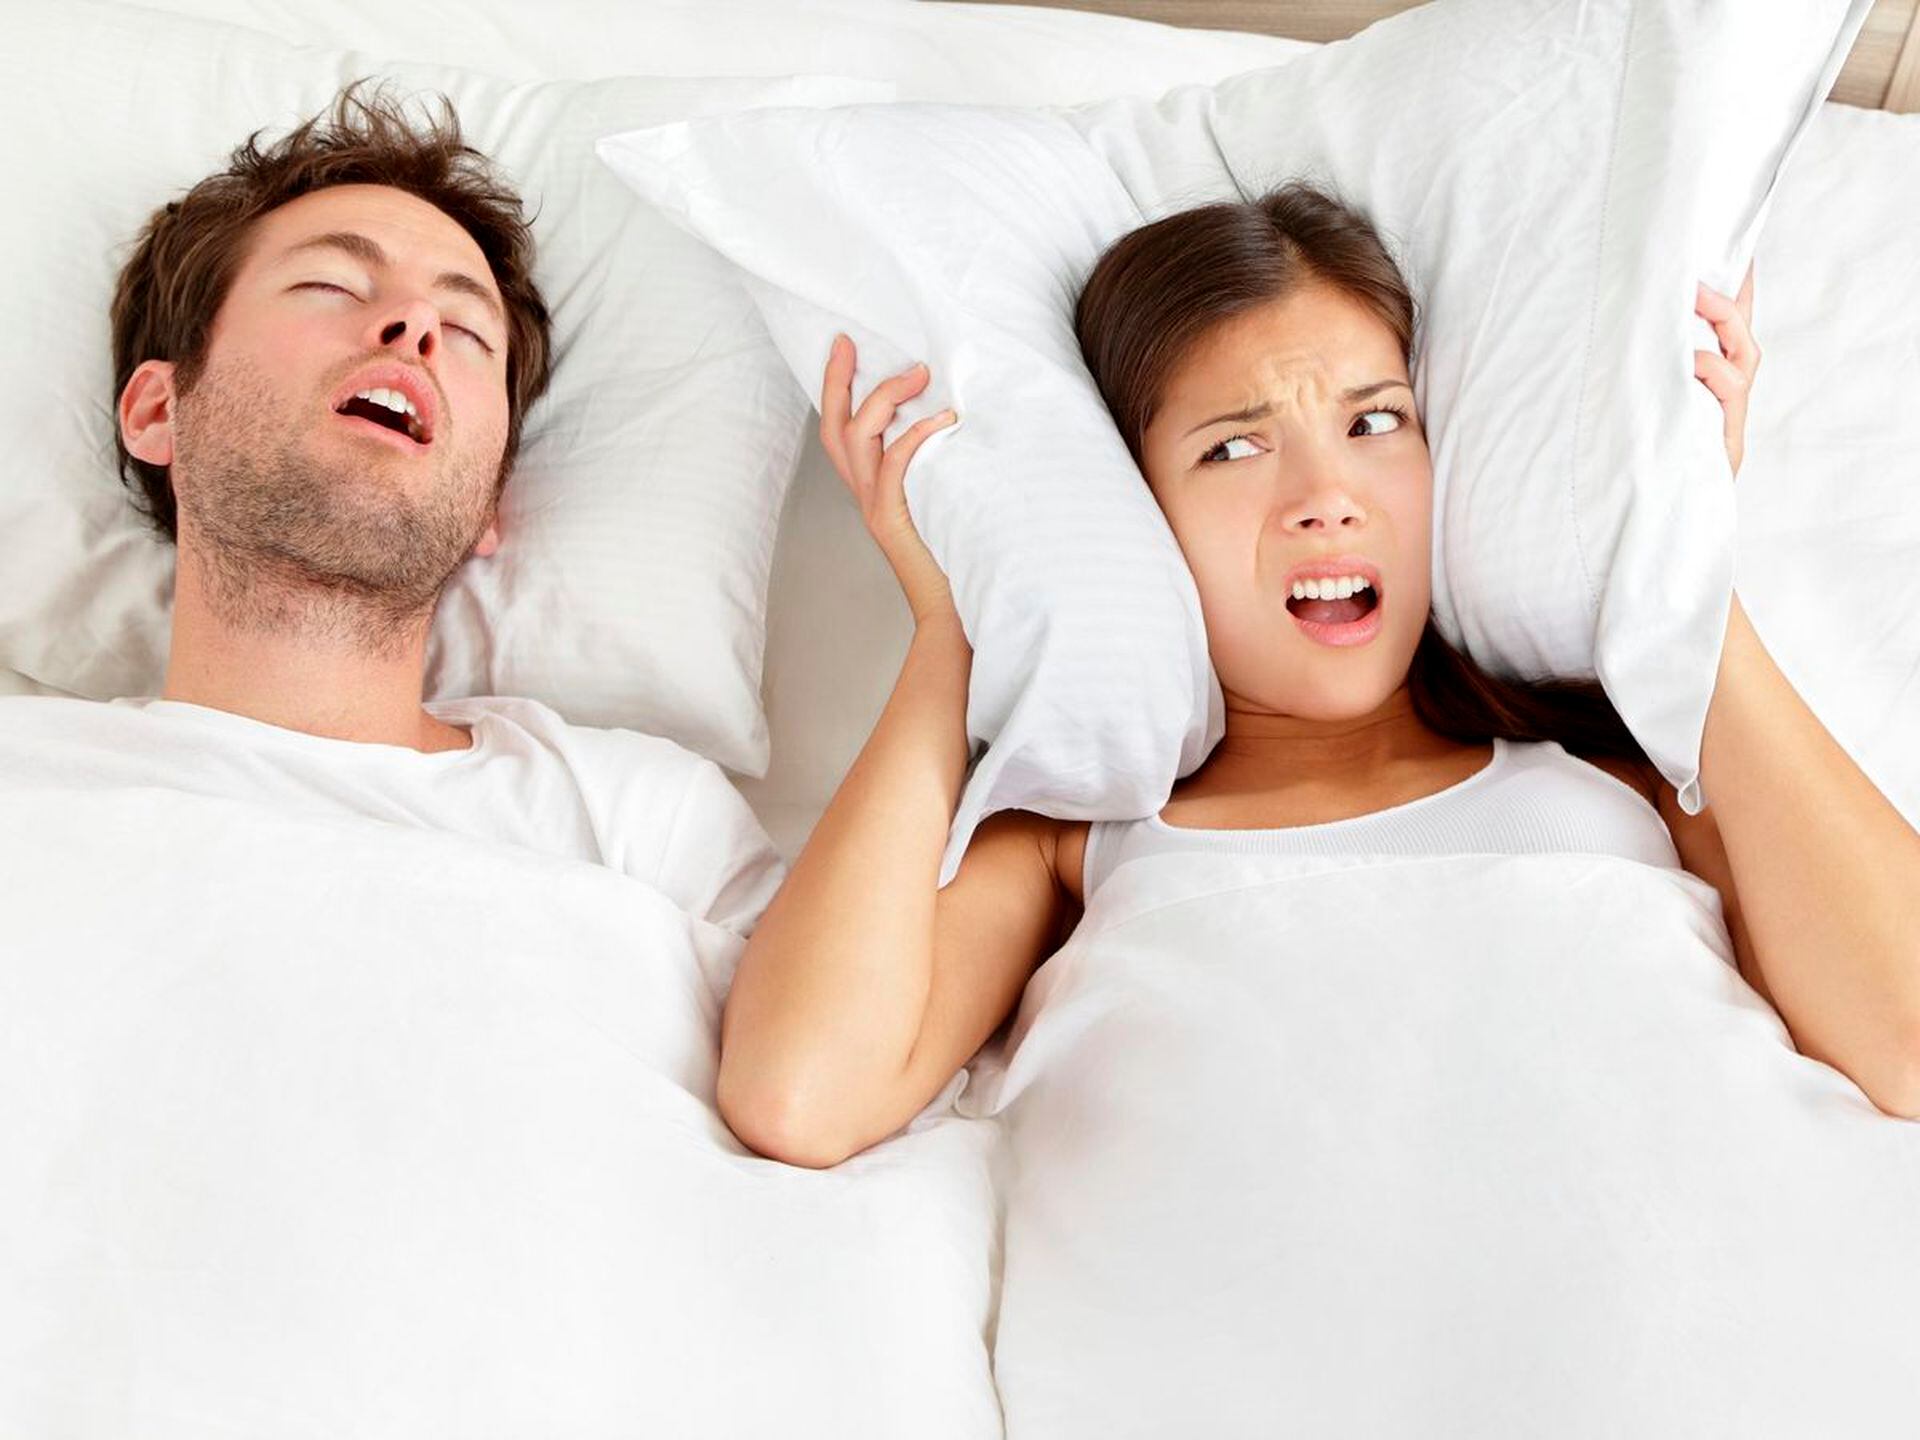 Remedios caseros para no roncar que hacer consejos antes dormir  recomendaciones nnda nnni, RESPUESTAS